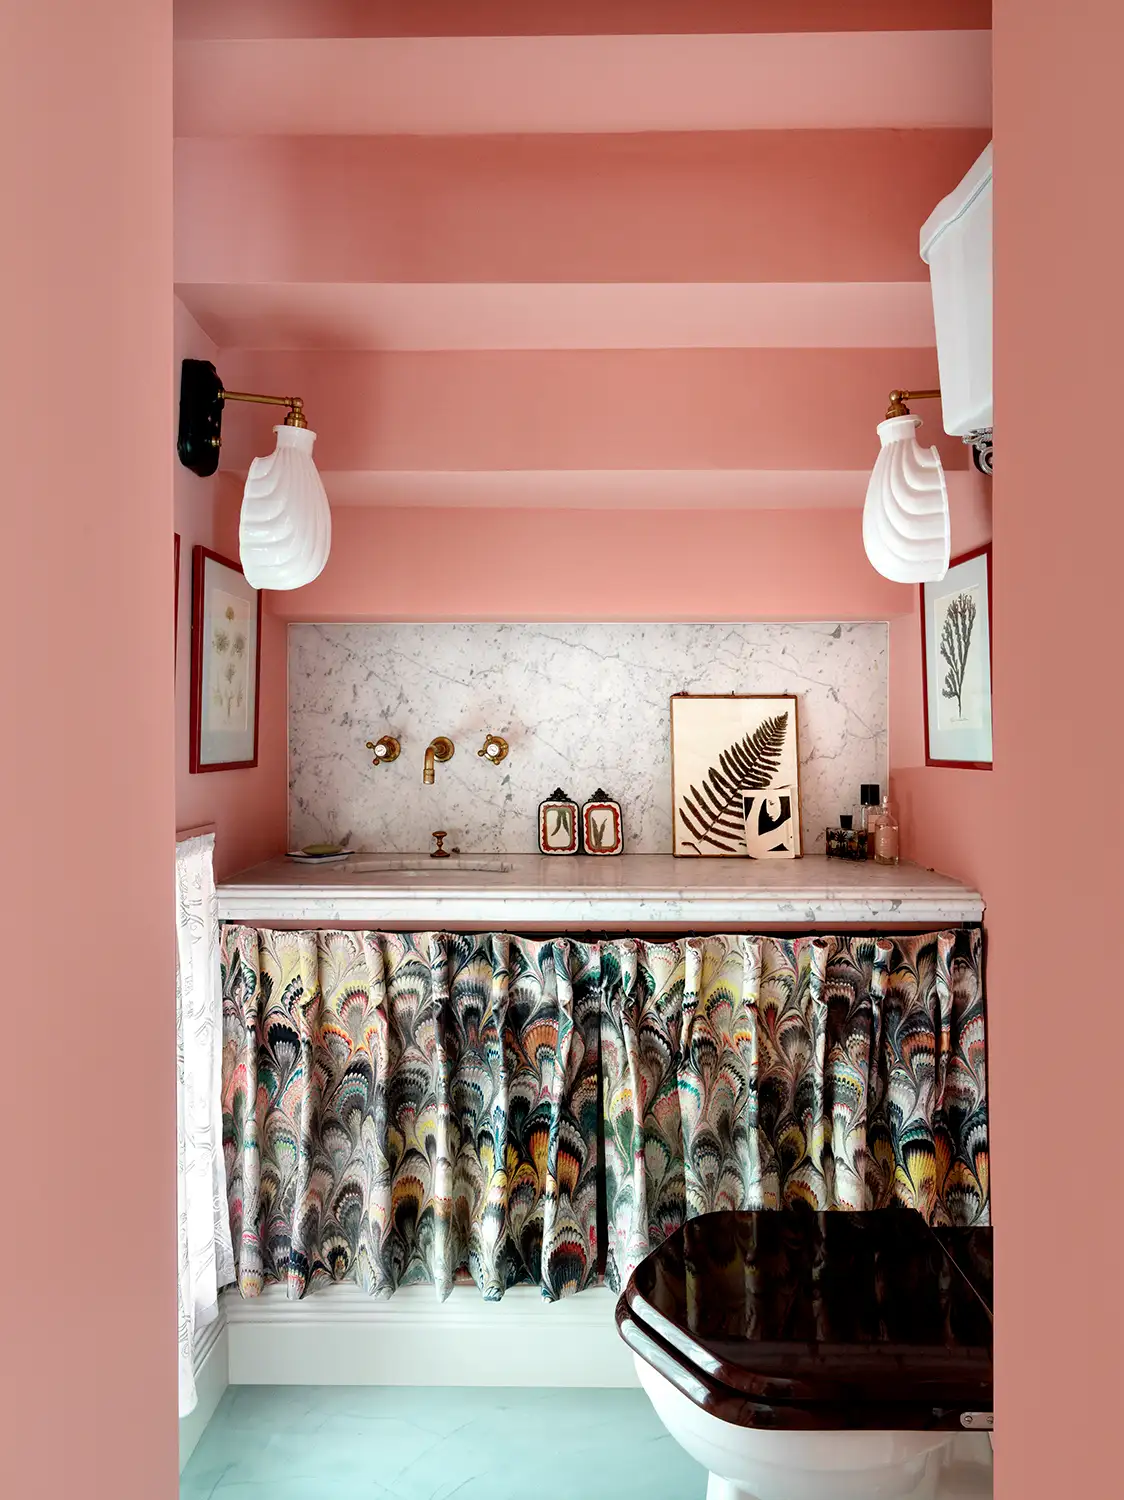 Bathroom in pink tones